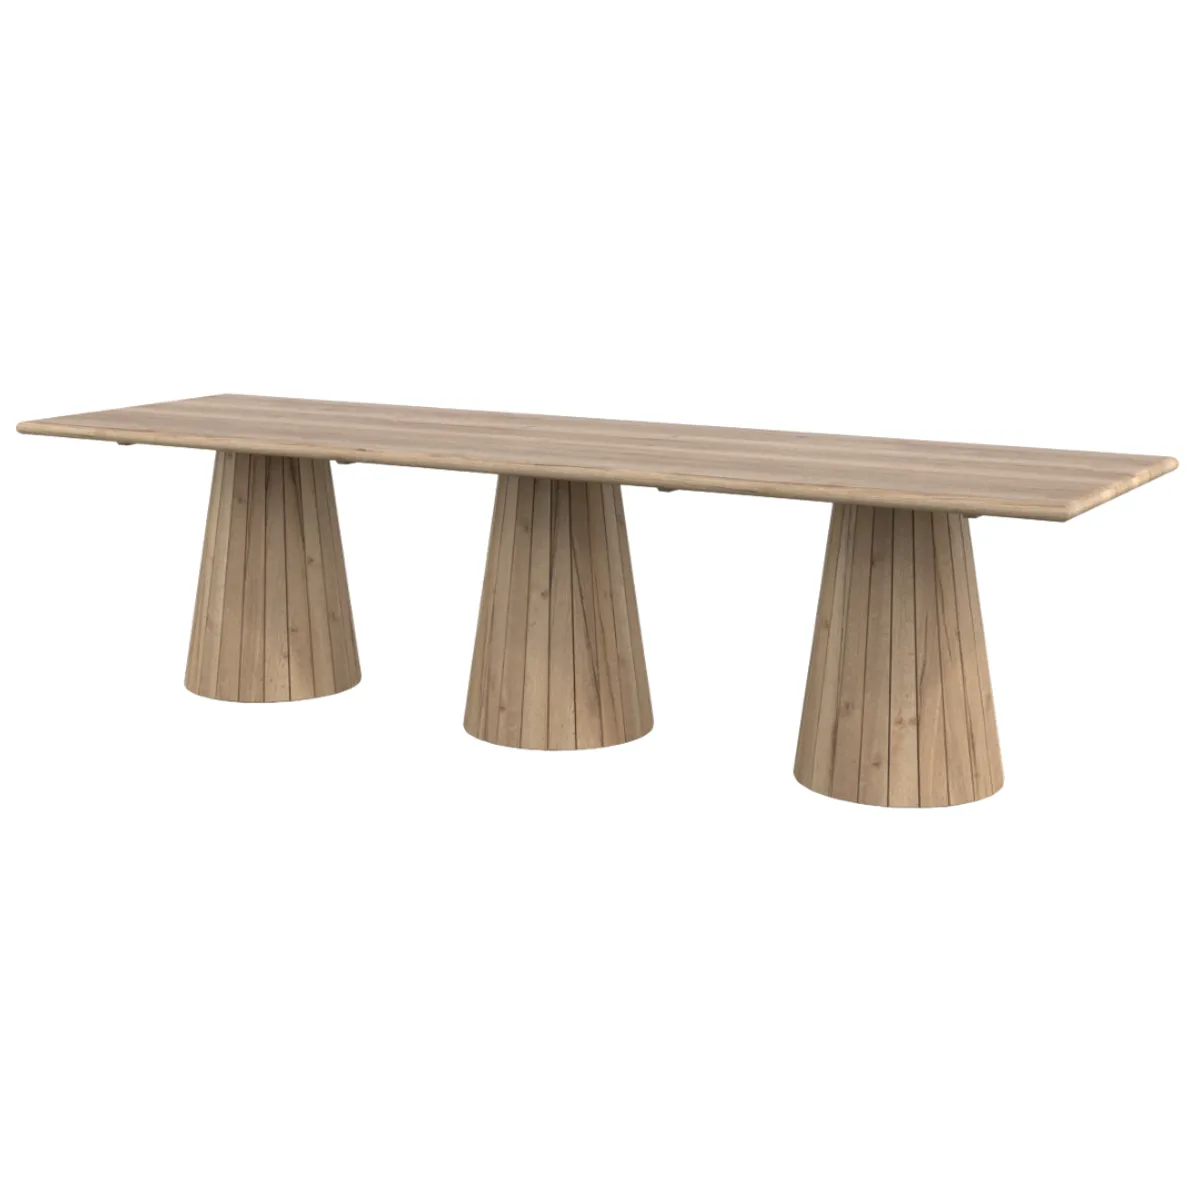 Bespoke metropole wooden table 1